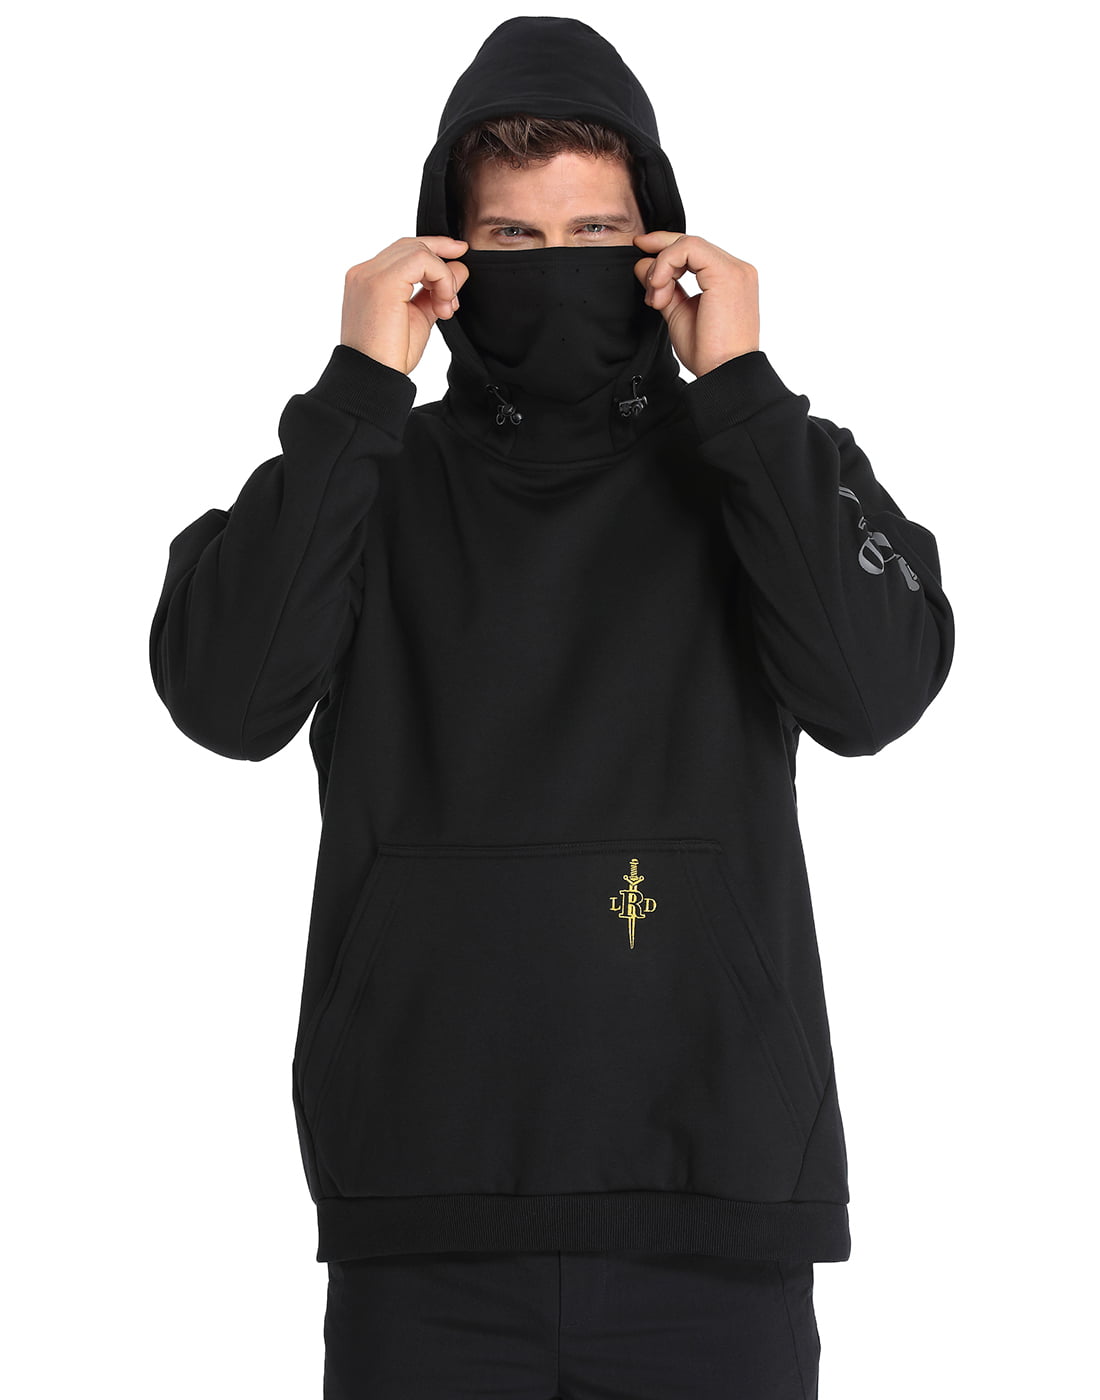 LRD Fleece Hoodie with Mask for Men Built in Gaiter Tactical Fishing  Sweatshirt 